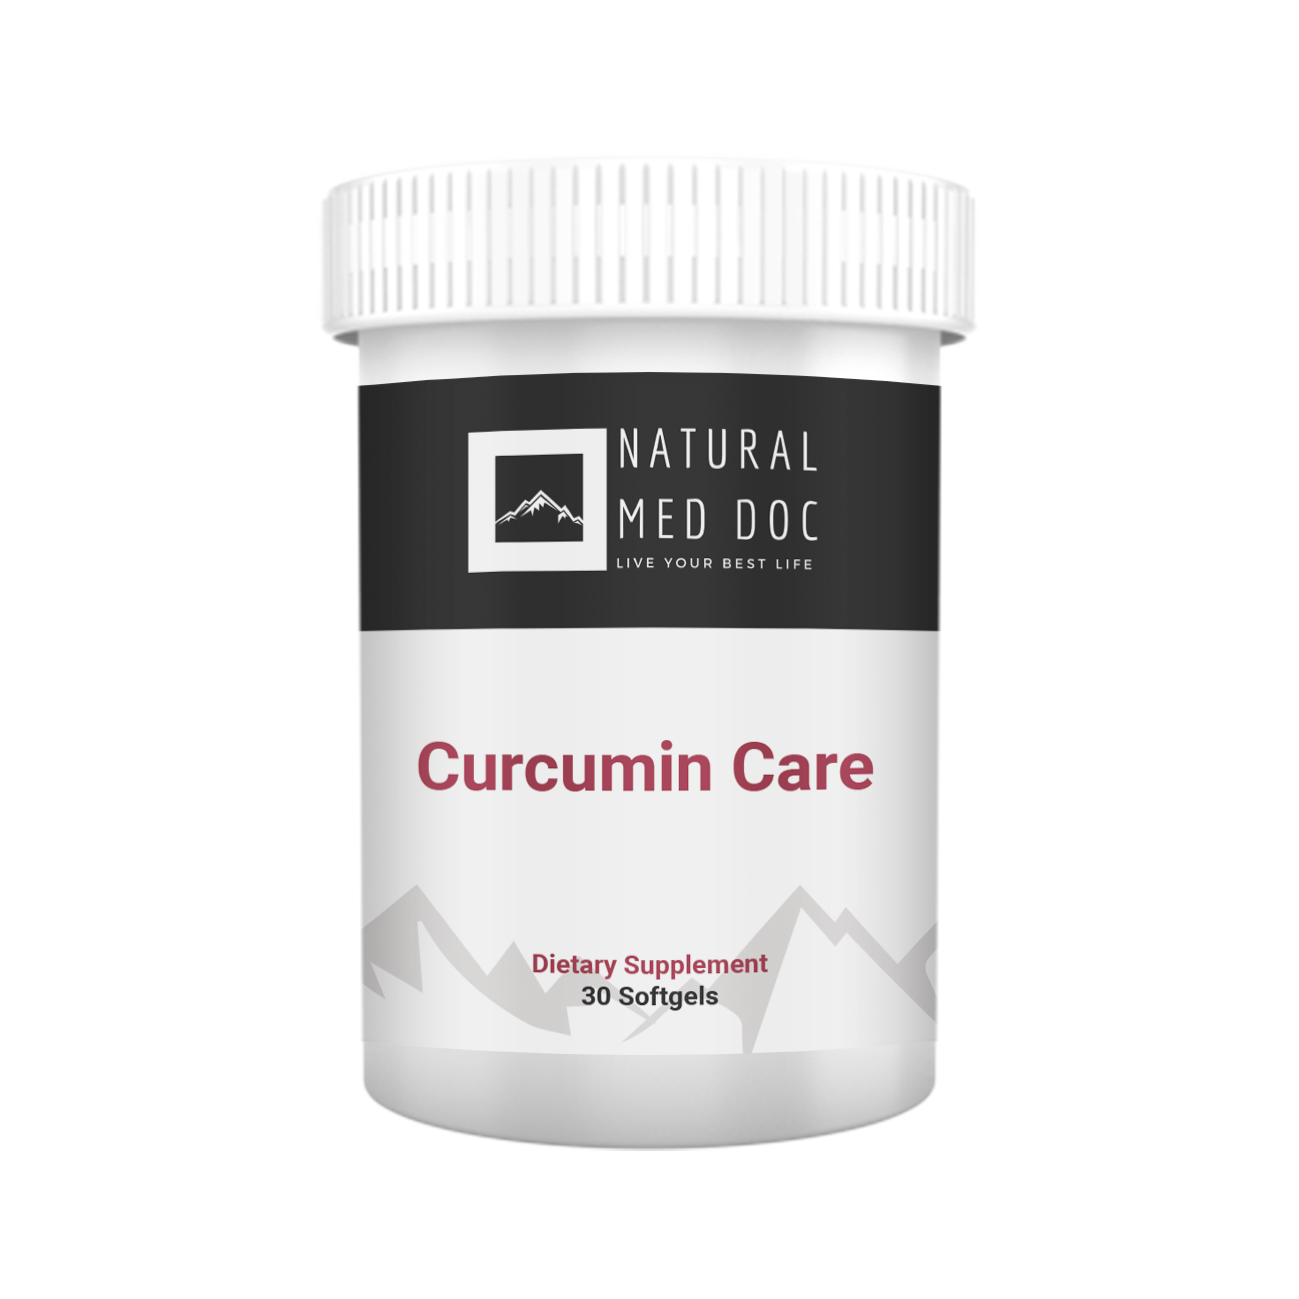 Curcumin Care